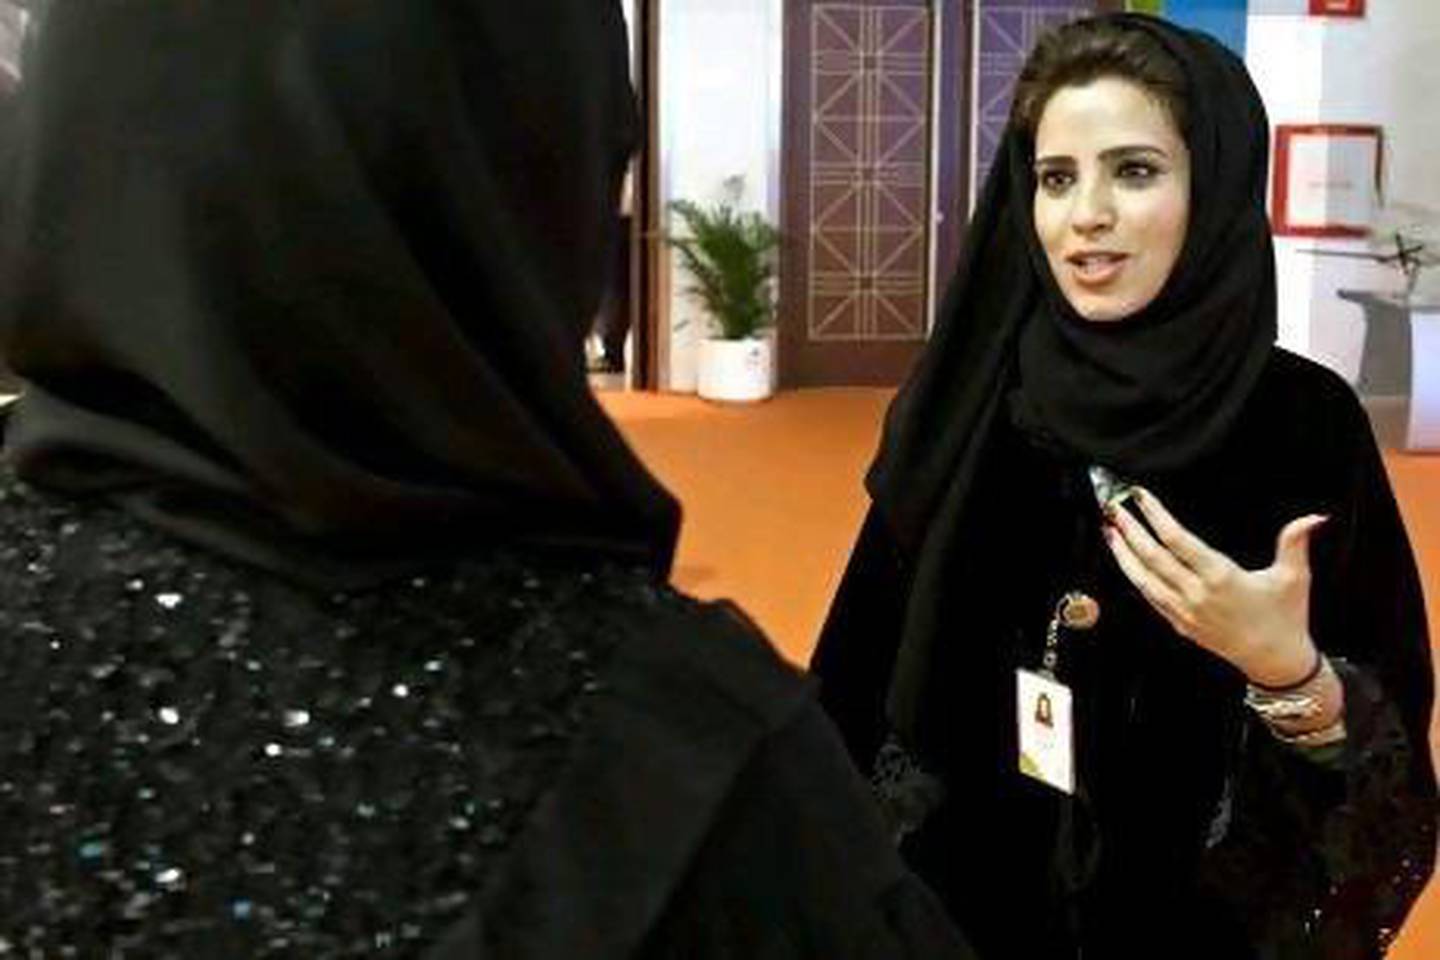 A careers fair in the UAE in 2012